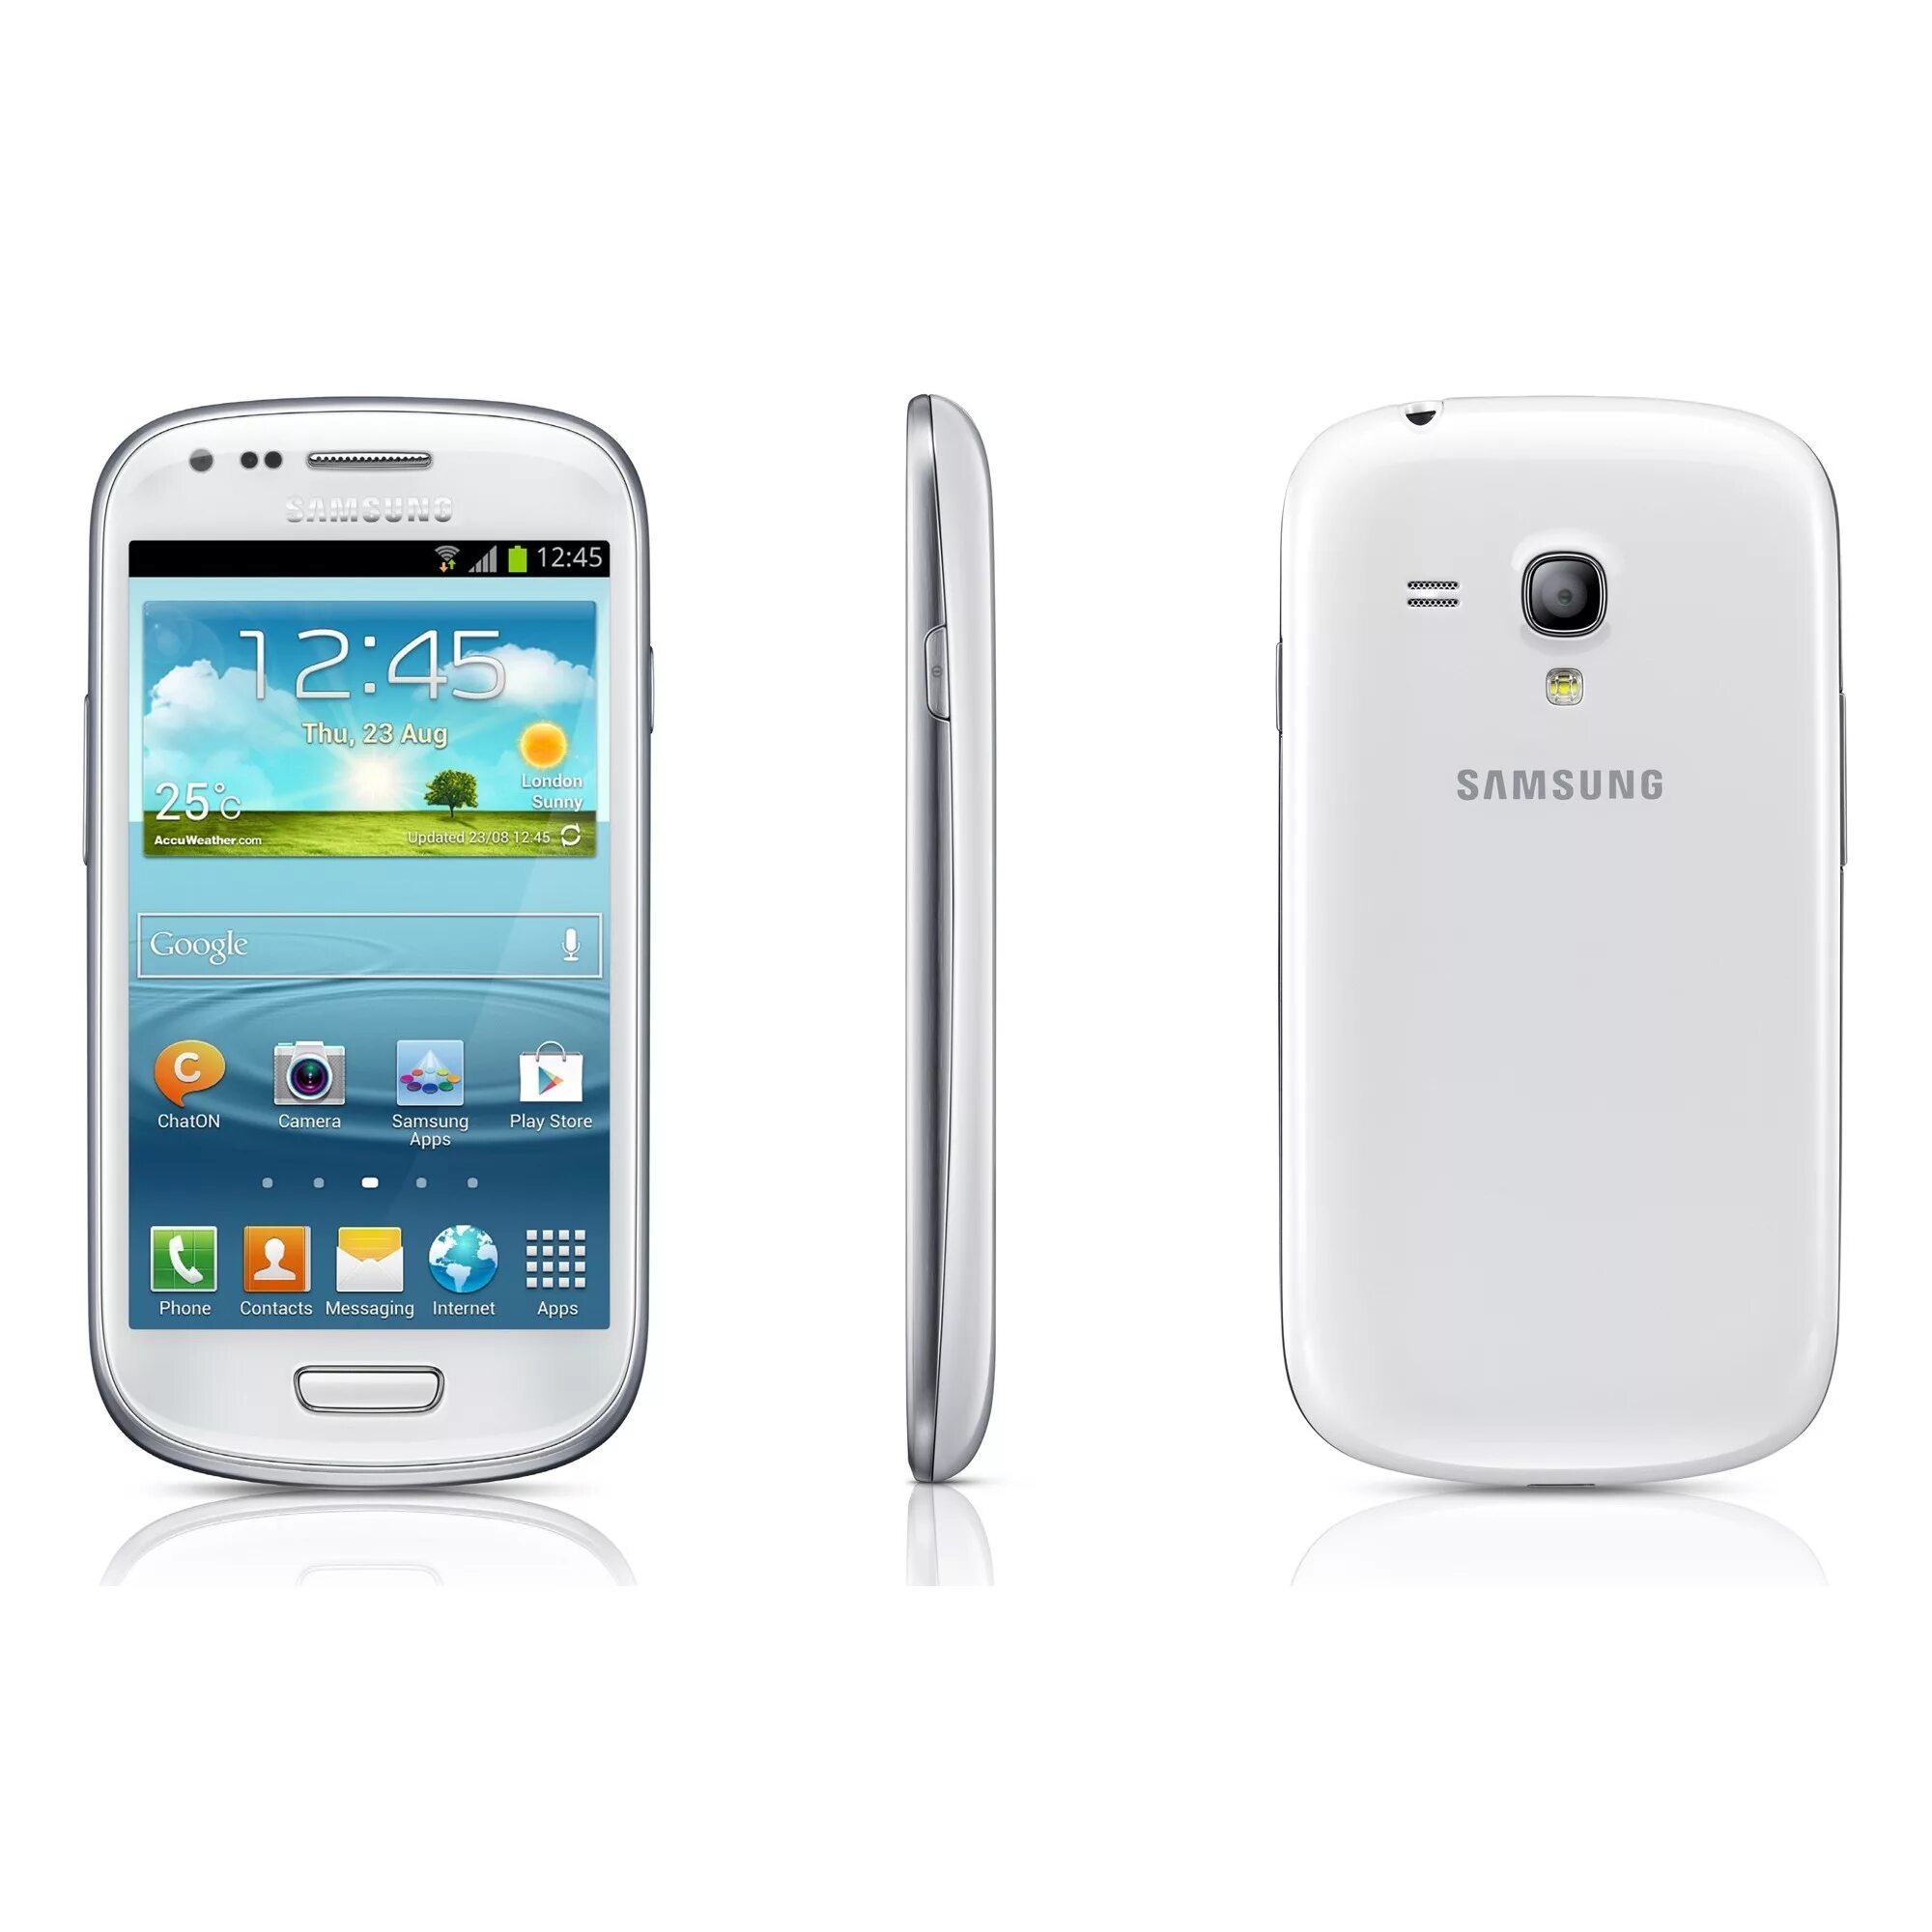 Самсунг gt 3. Самсунг s3 Mini. Samsung Galaxy s3. Самсунг гелакси s3 мини. Самсунг галакси с 3 мини.